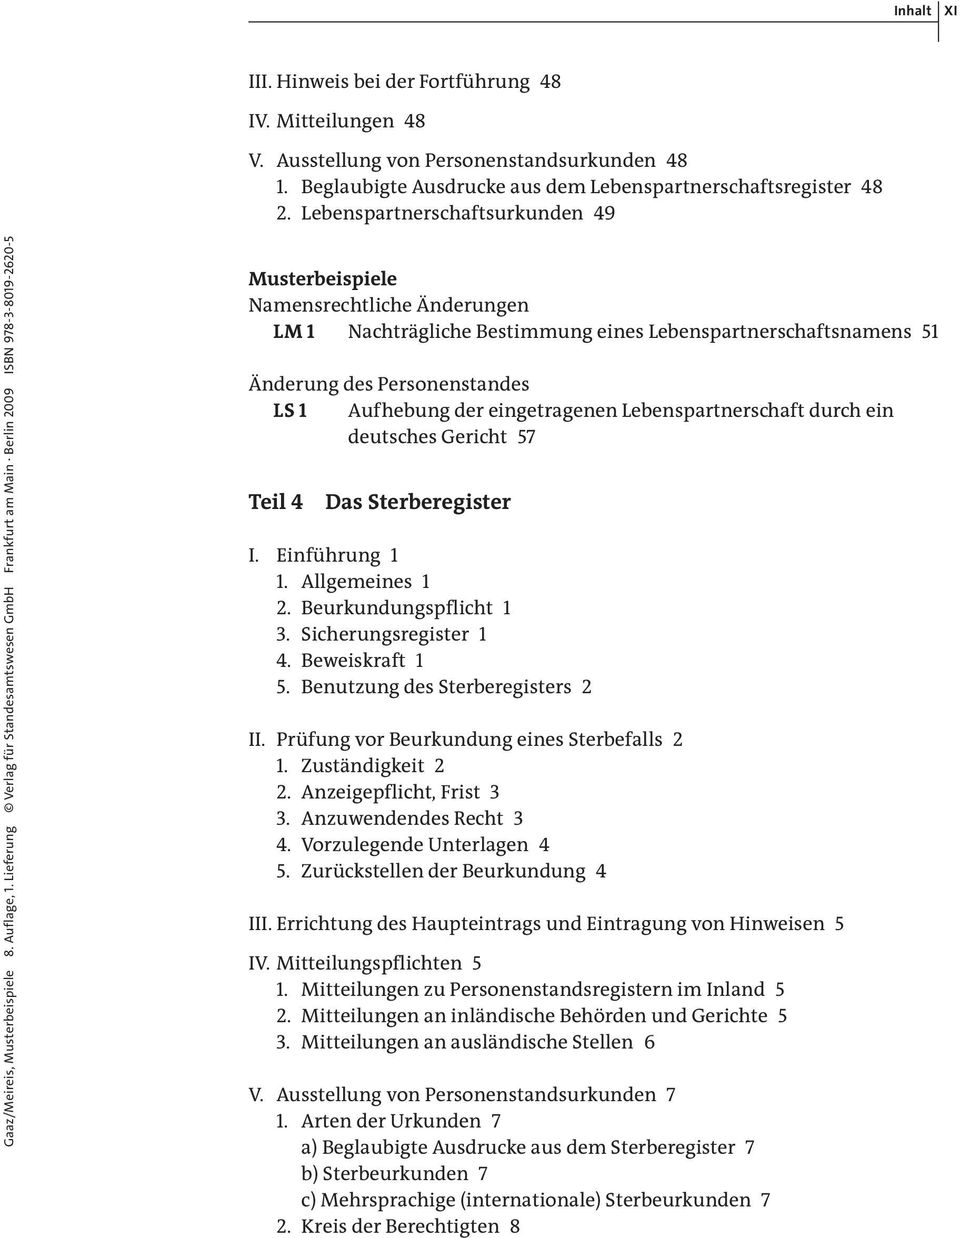 Lieferung Verlag für Standesamtswesen GmbH Frankfurt am Main Berlin 2009 ISBN 978-3-8019-2620-5 Namensrechtliche Änderungen LM 1 Nachträgliche Bestimmung eines Lebenspartnerschaftsnamens 51 Änderung